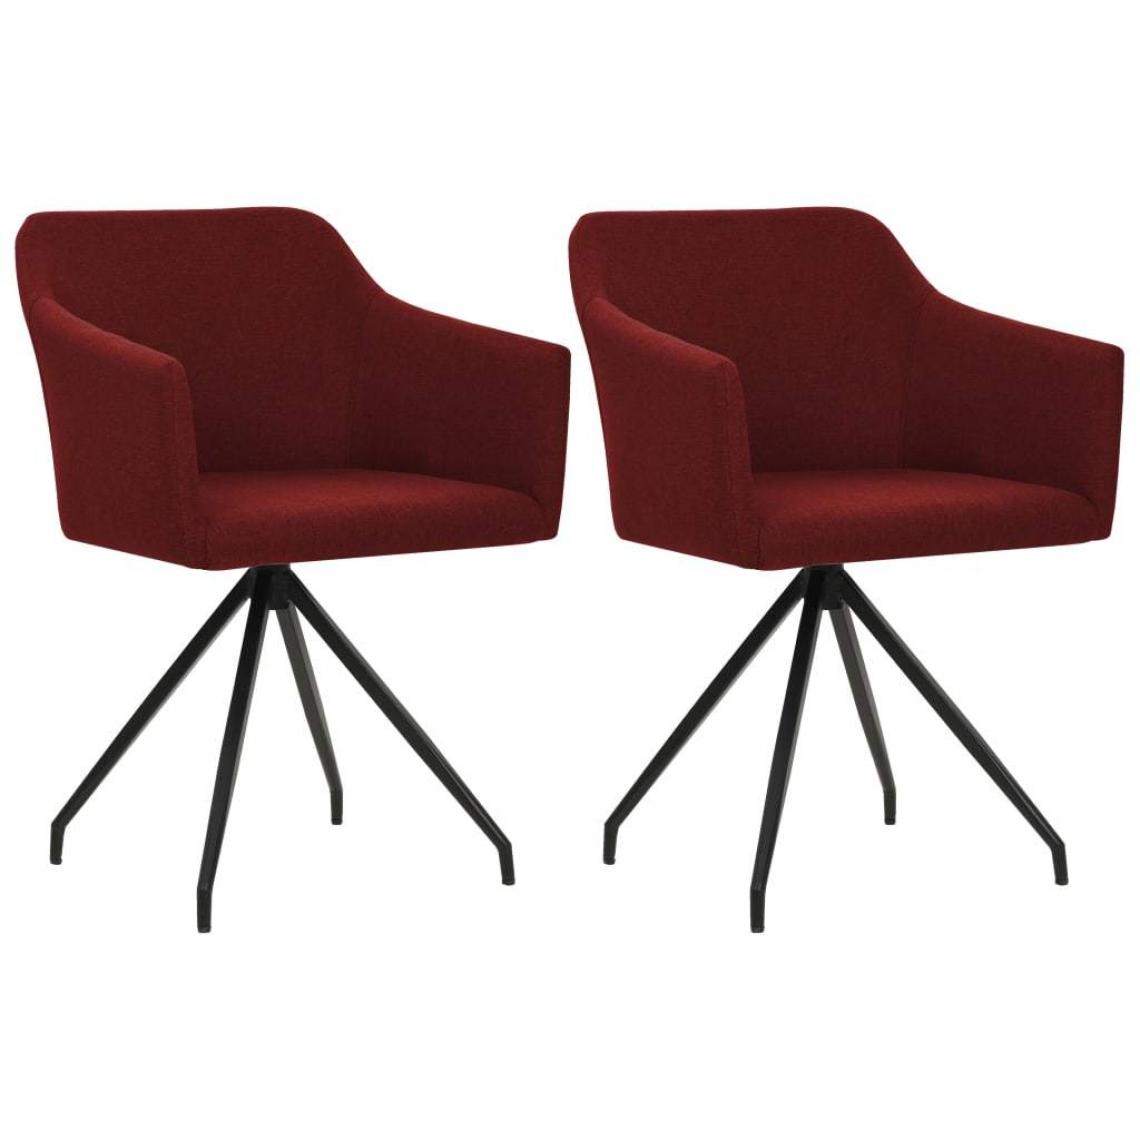 Decoshop26 - Lot de 2 chaises de salle à manger cuisine design moderne tissu rouge bordeaux CDS020983 - Chaises